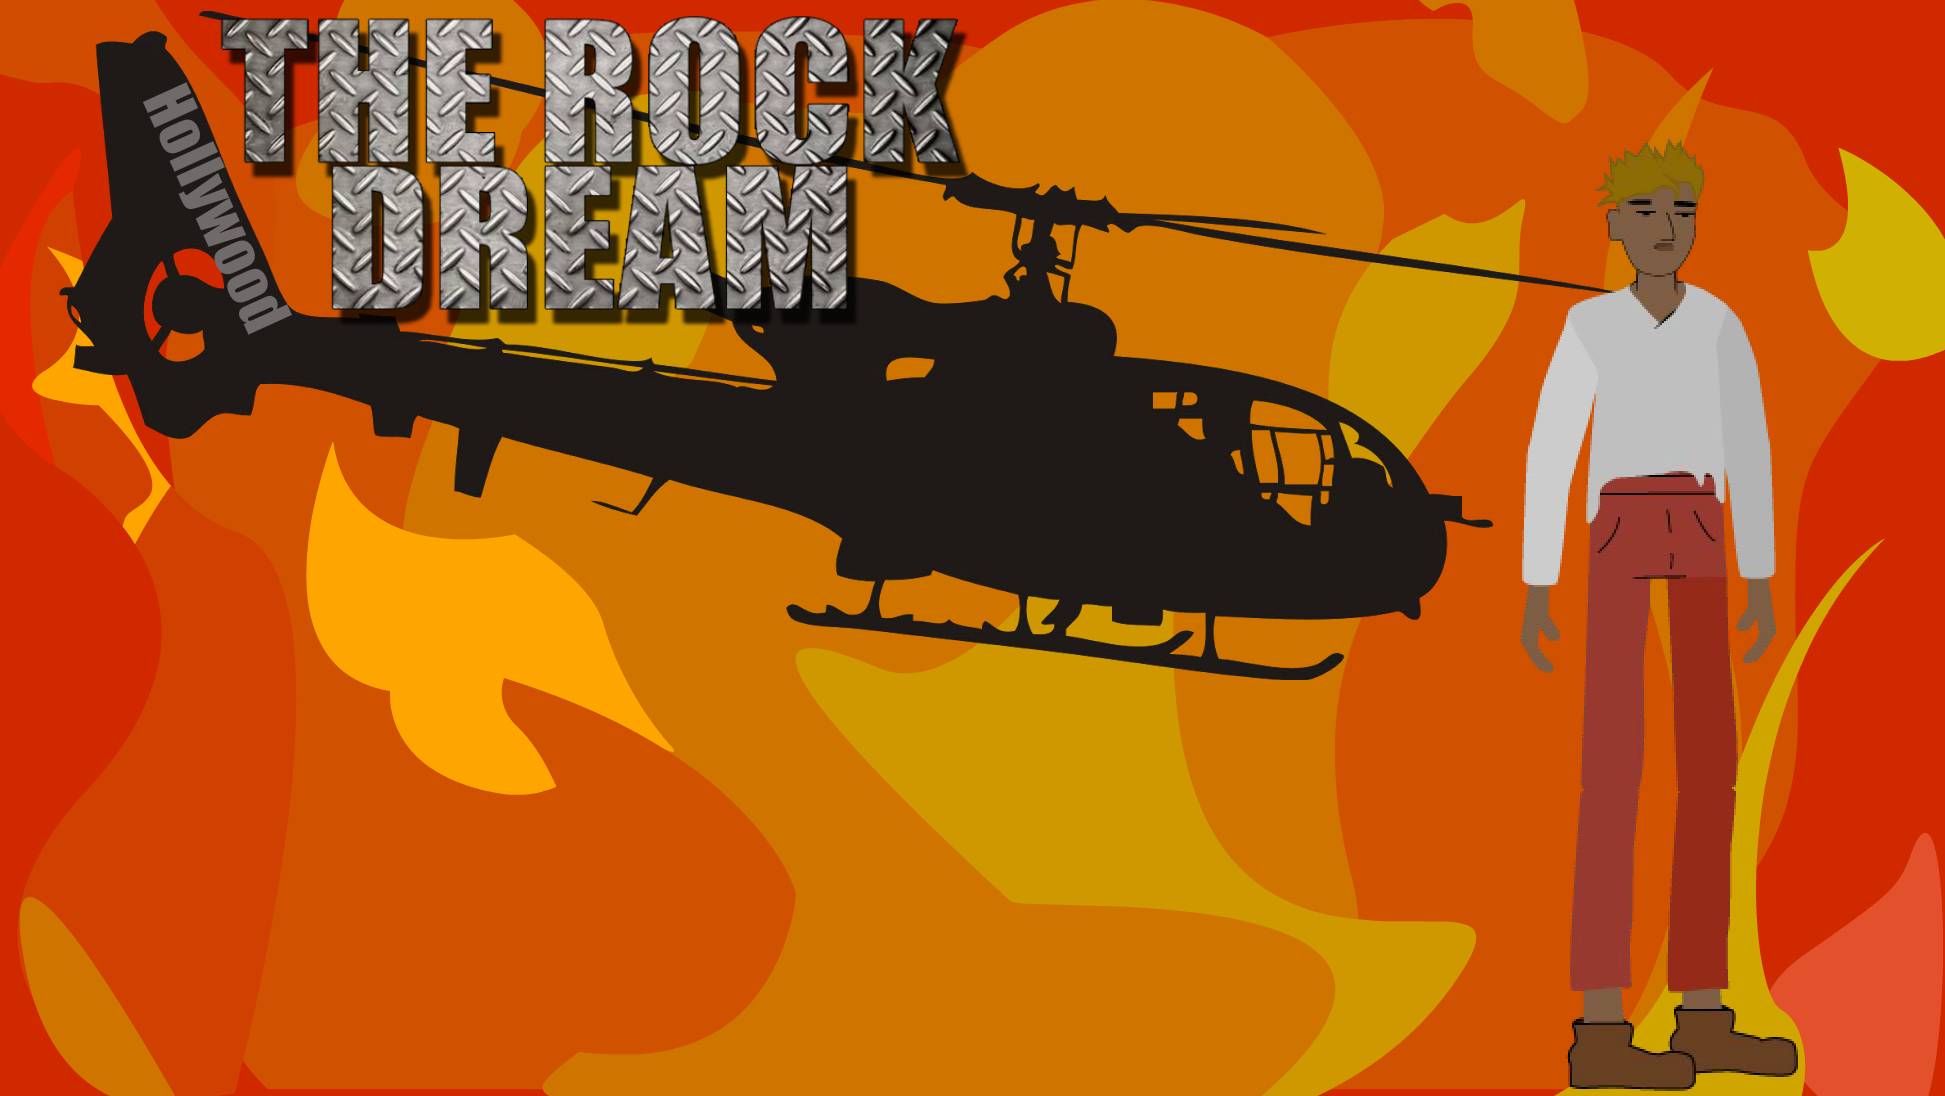 The Rock Dream